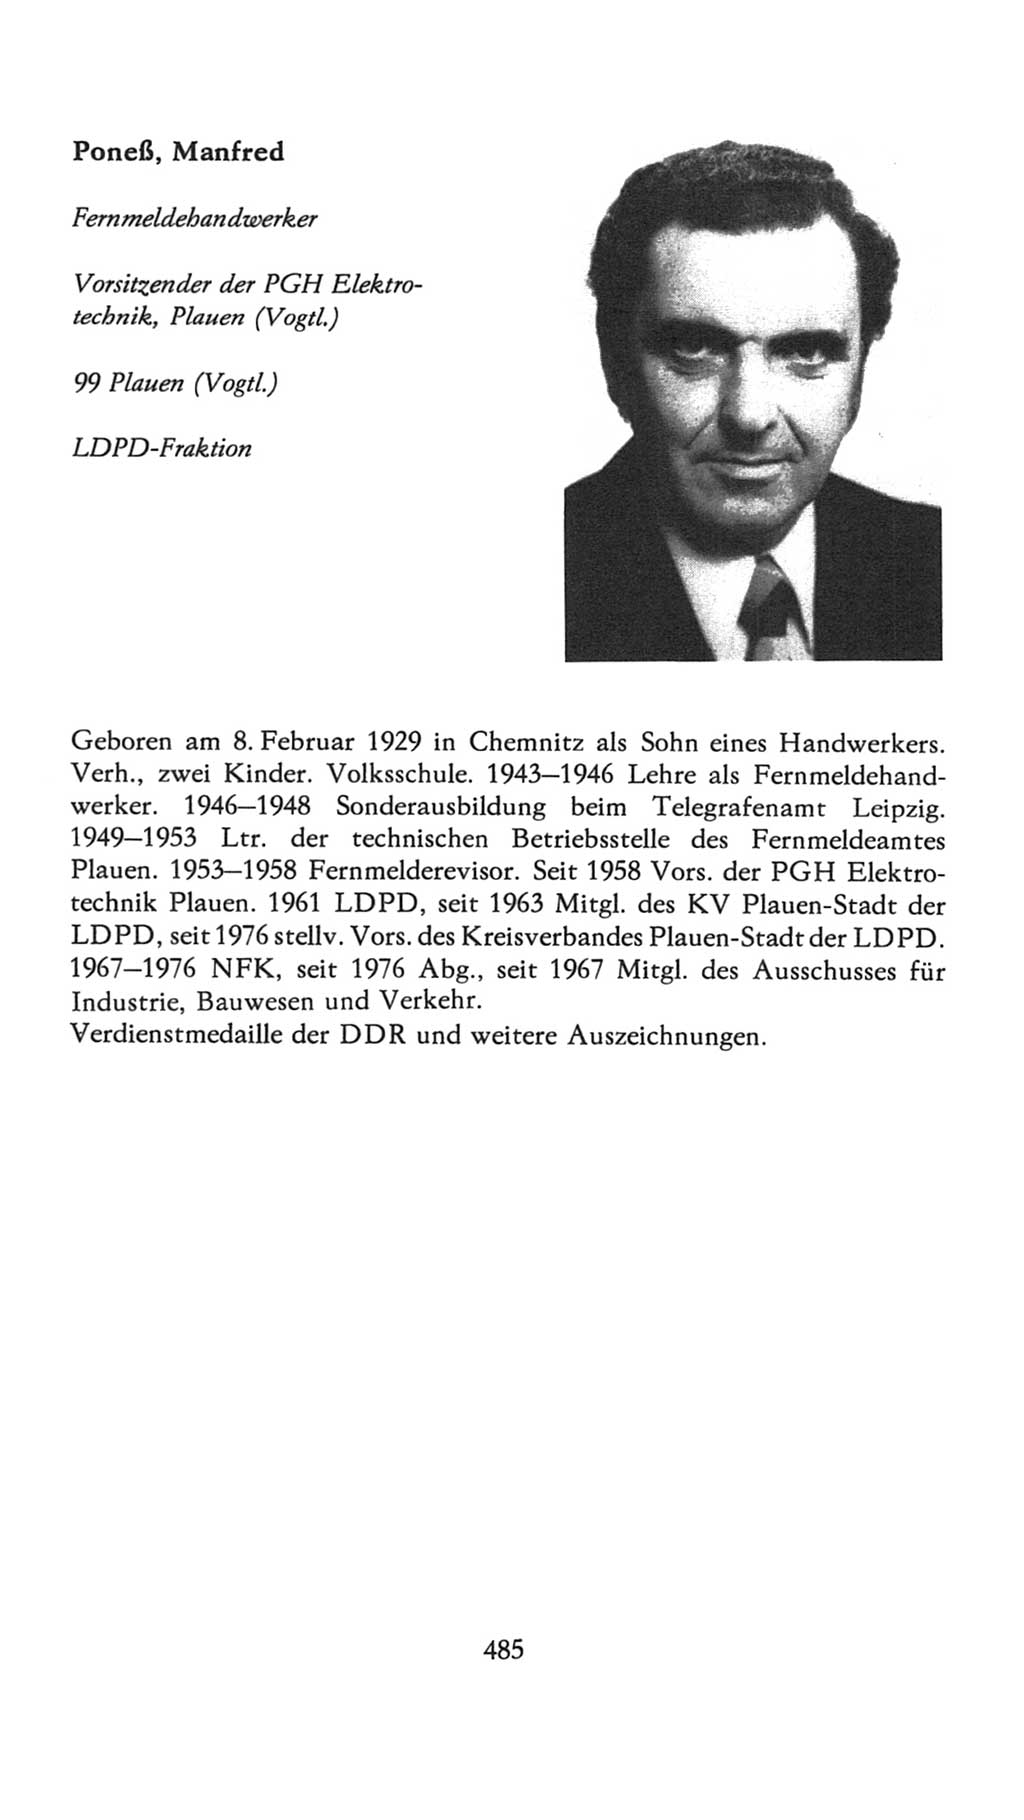 Volkskammer (VK) der Deutschen Demokratischen Republik (DDR), 7. Wahlperiode 1976-1981, Seite 485 (VK. DDR 7. WP. 1976-1981, S. 485)